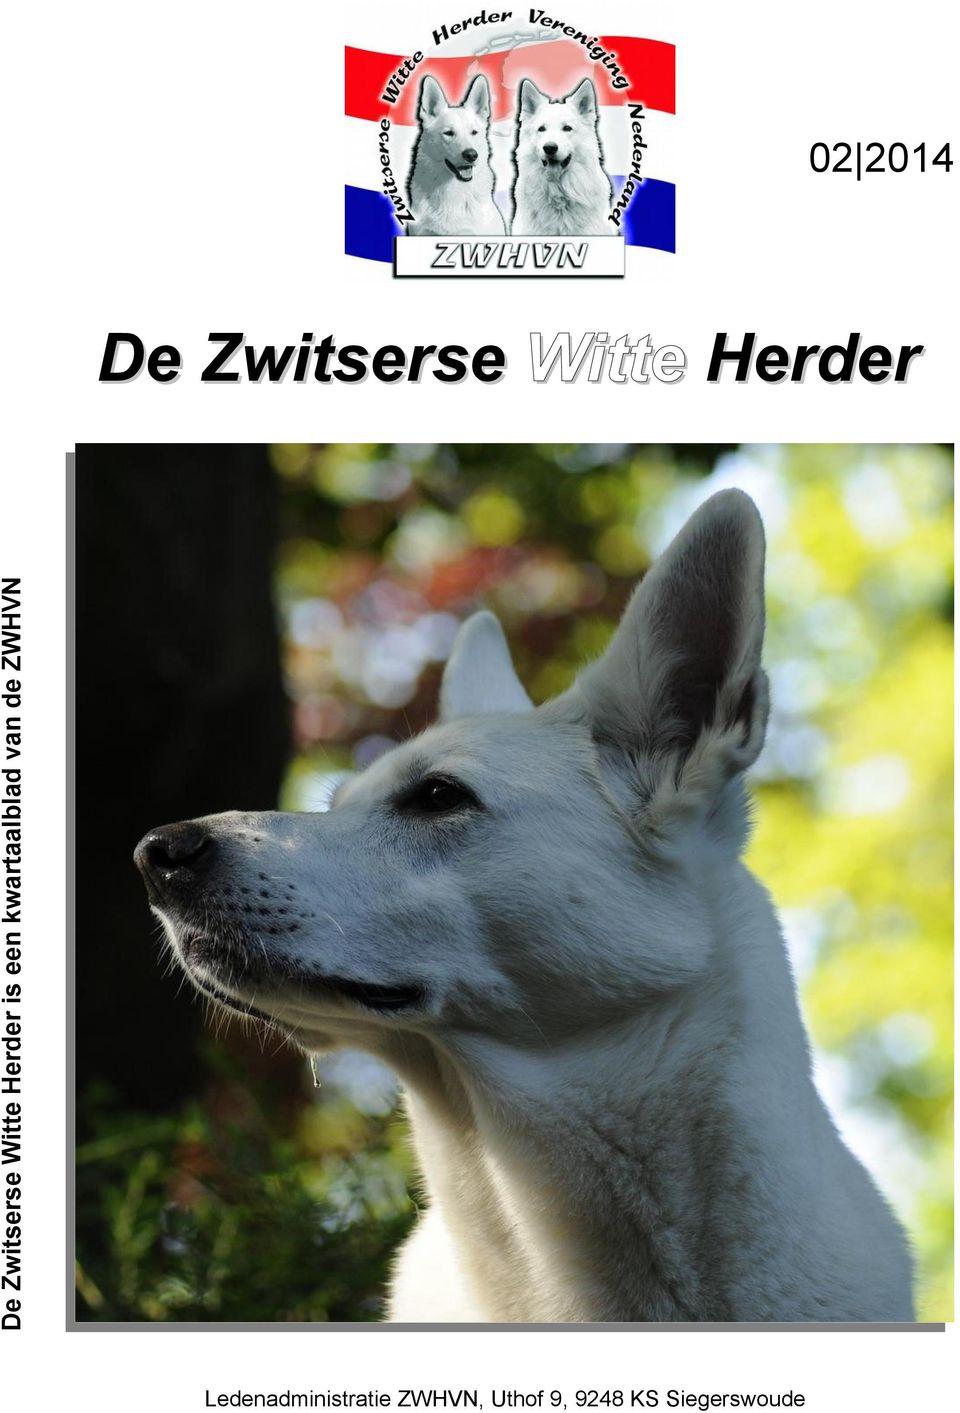 Zwitserse Witte Herder